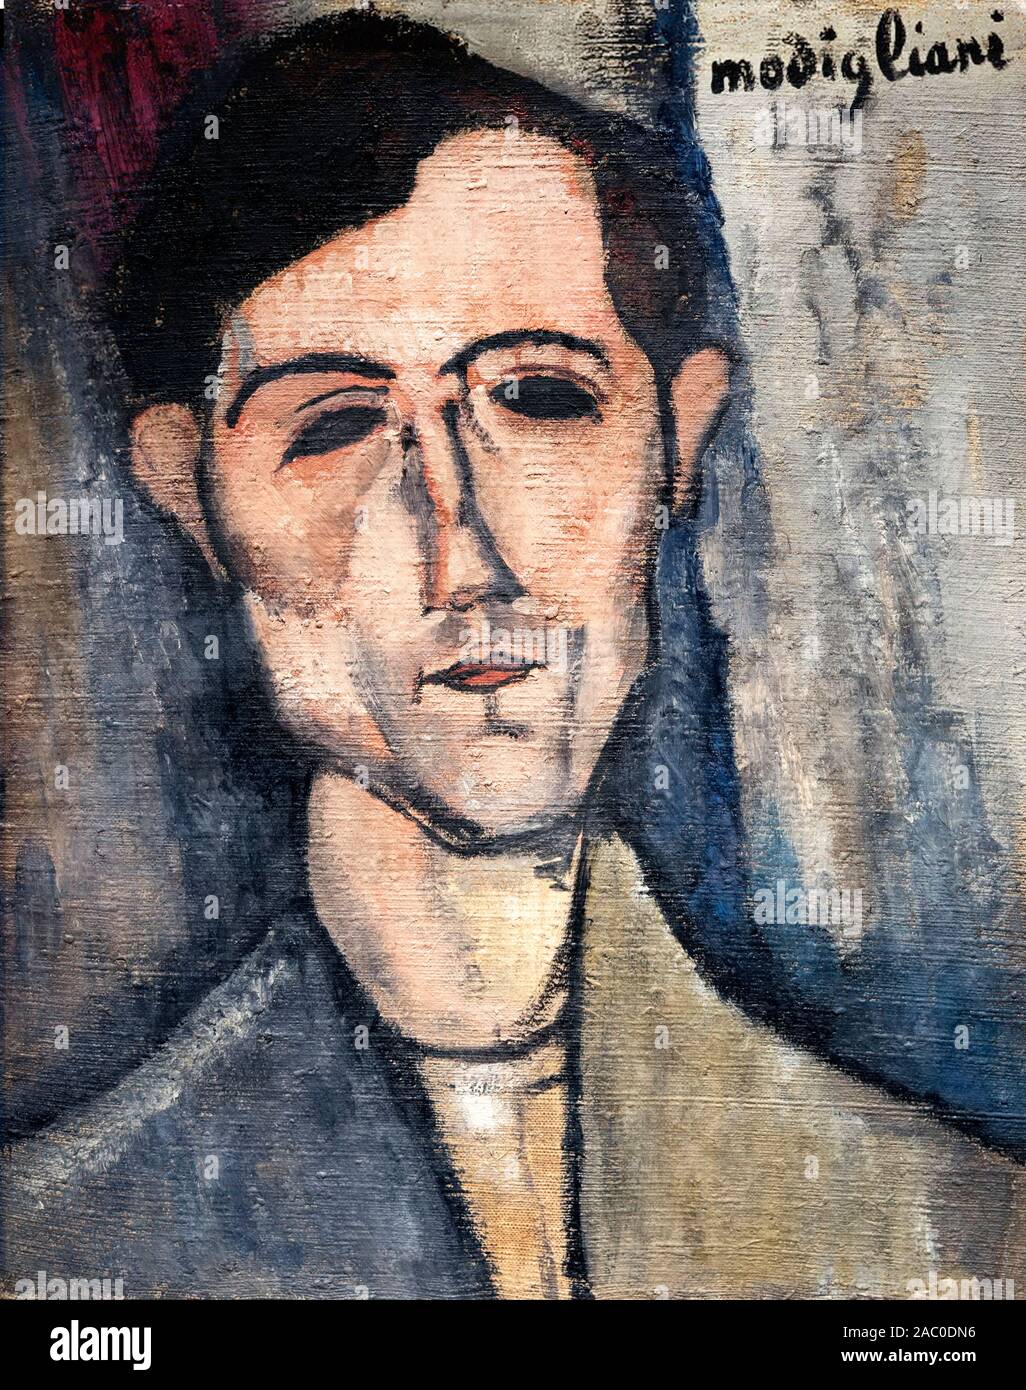 Ein Mann von Amedeo Modigliani Clemente (1884-1920), Öl auf Leinwand, 1916 Stockfoto